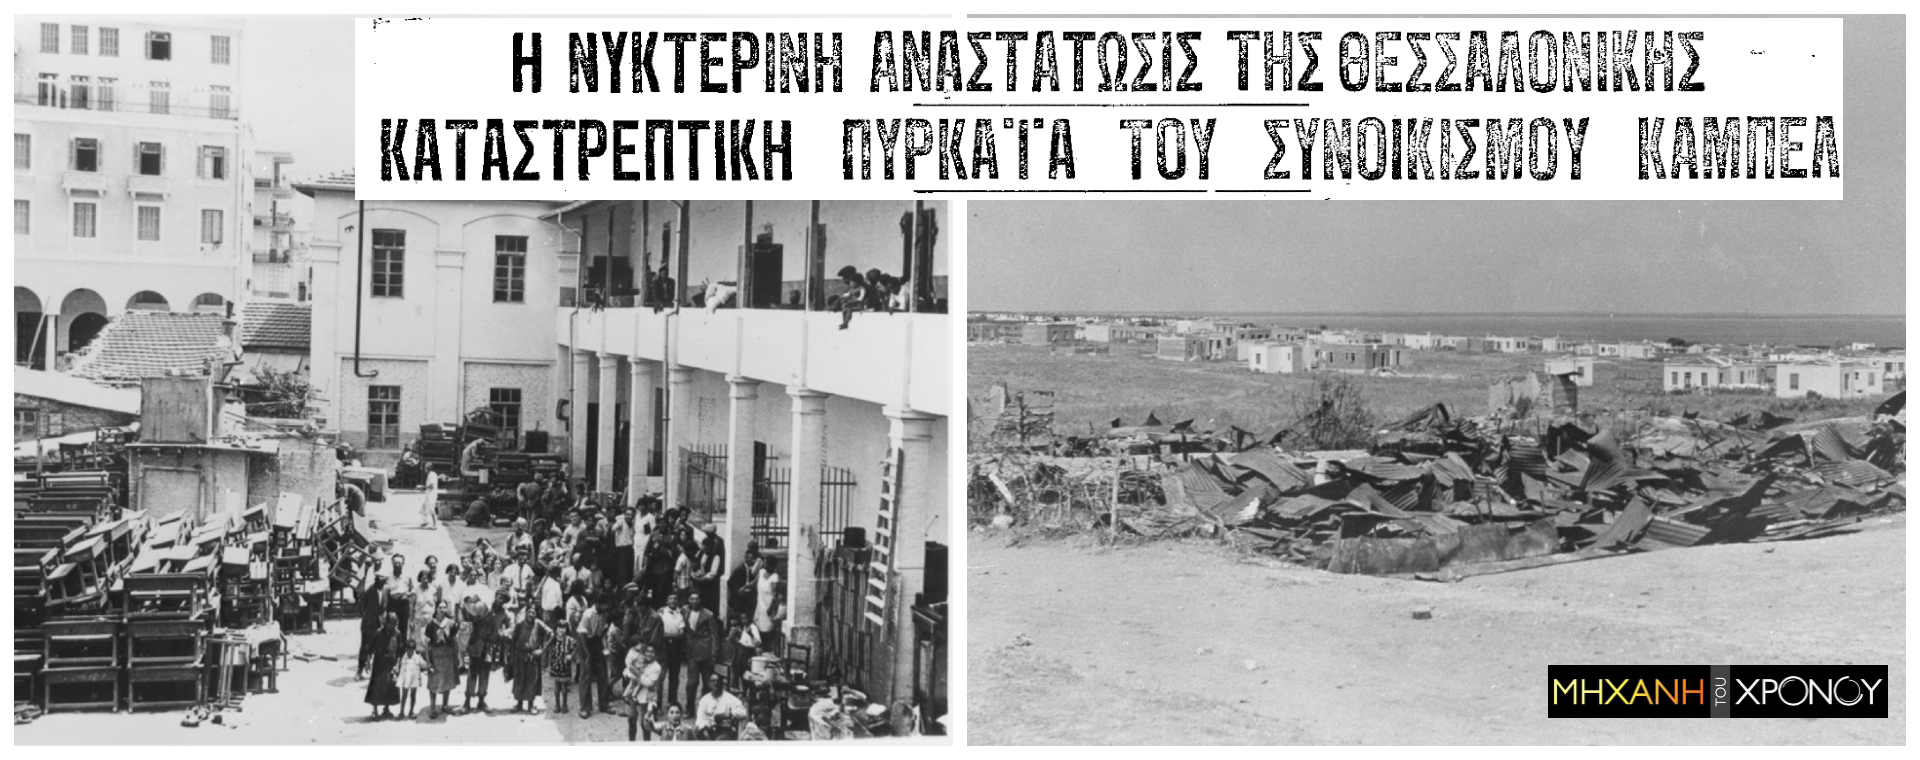 Το πογκρόμ εναντίον της εβραϊκής συνοικίας στη Θεσσαλονίκη από φασίστες, που στη διάρκεια της Κατοχής συνεργάστηκαν με τους Γερμανούς